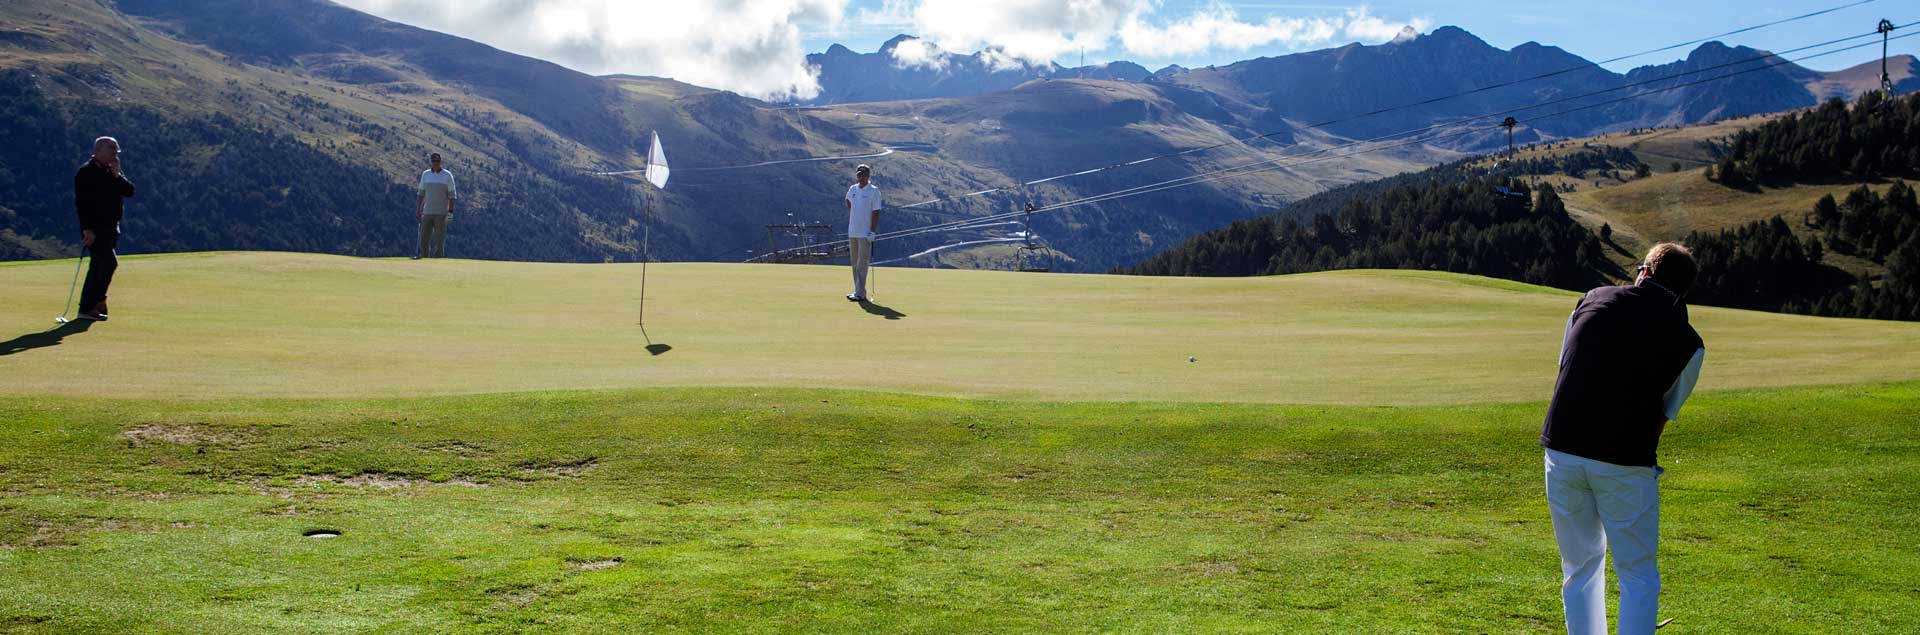 campo de golf en verano en Andorra